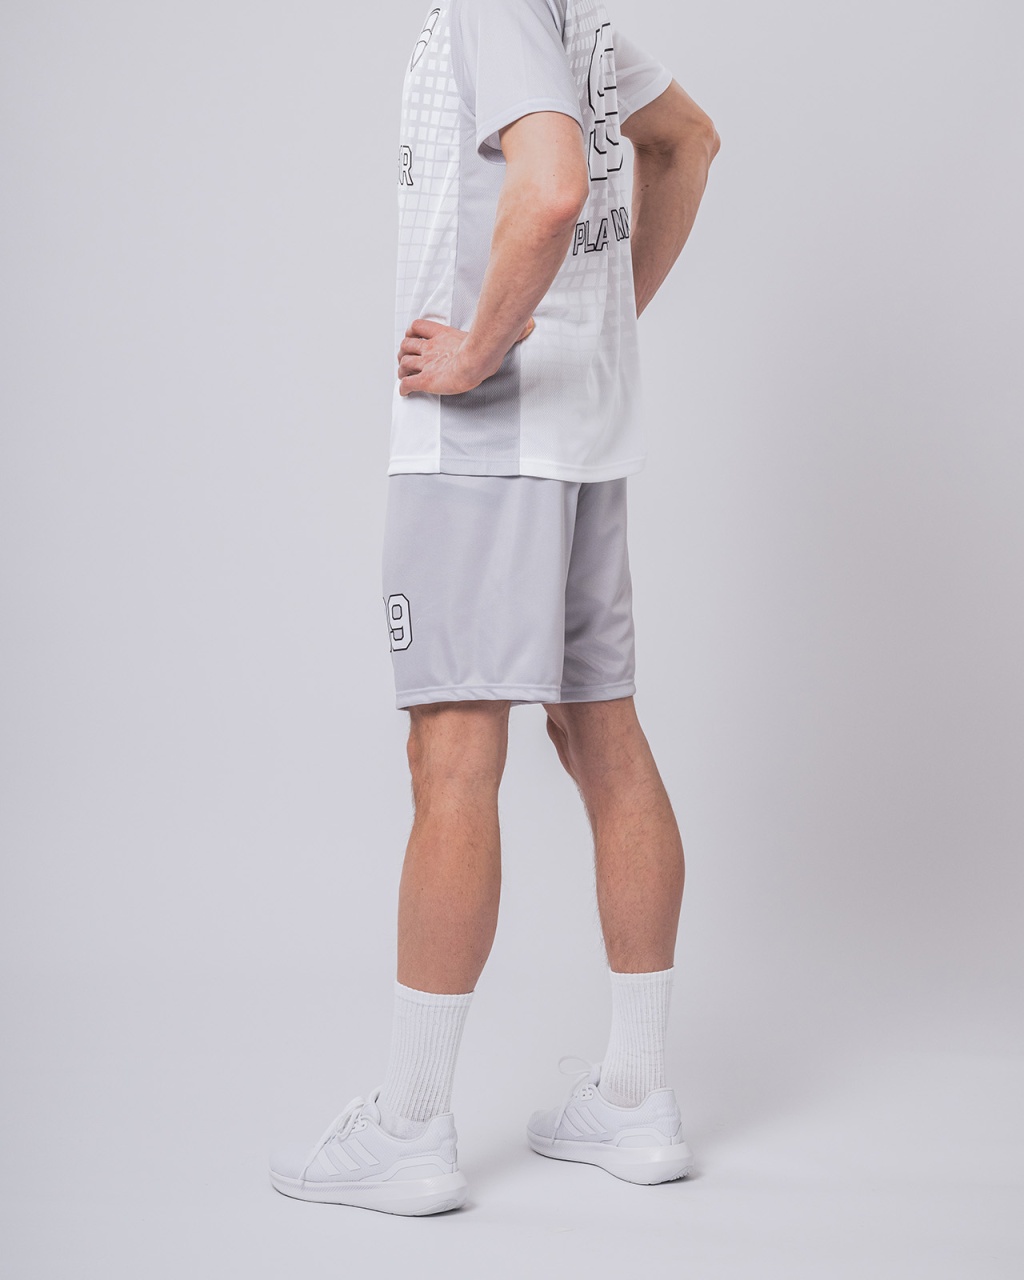 Aarhus men’s handball shorts